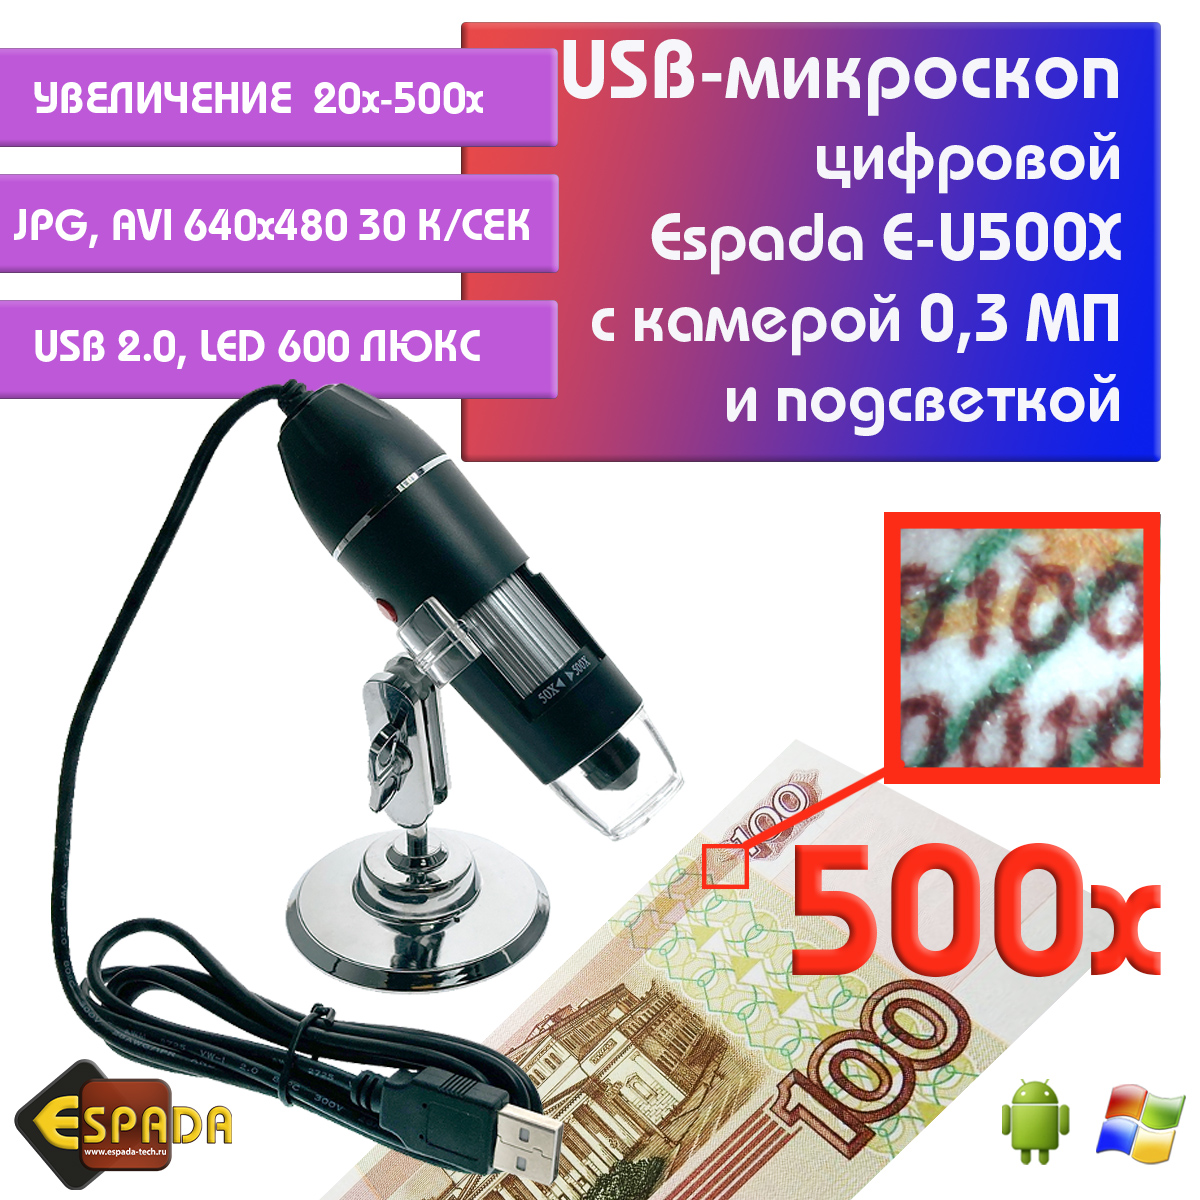 Портативный цифровой USB-микроскоп Espada E-U500X c камерой 0,3 МП и увеличением 500x внешняя звуковая карта espada paau003